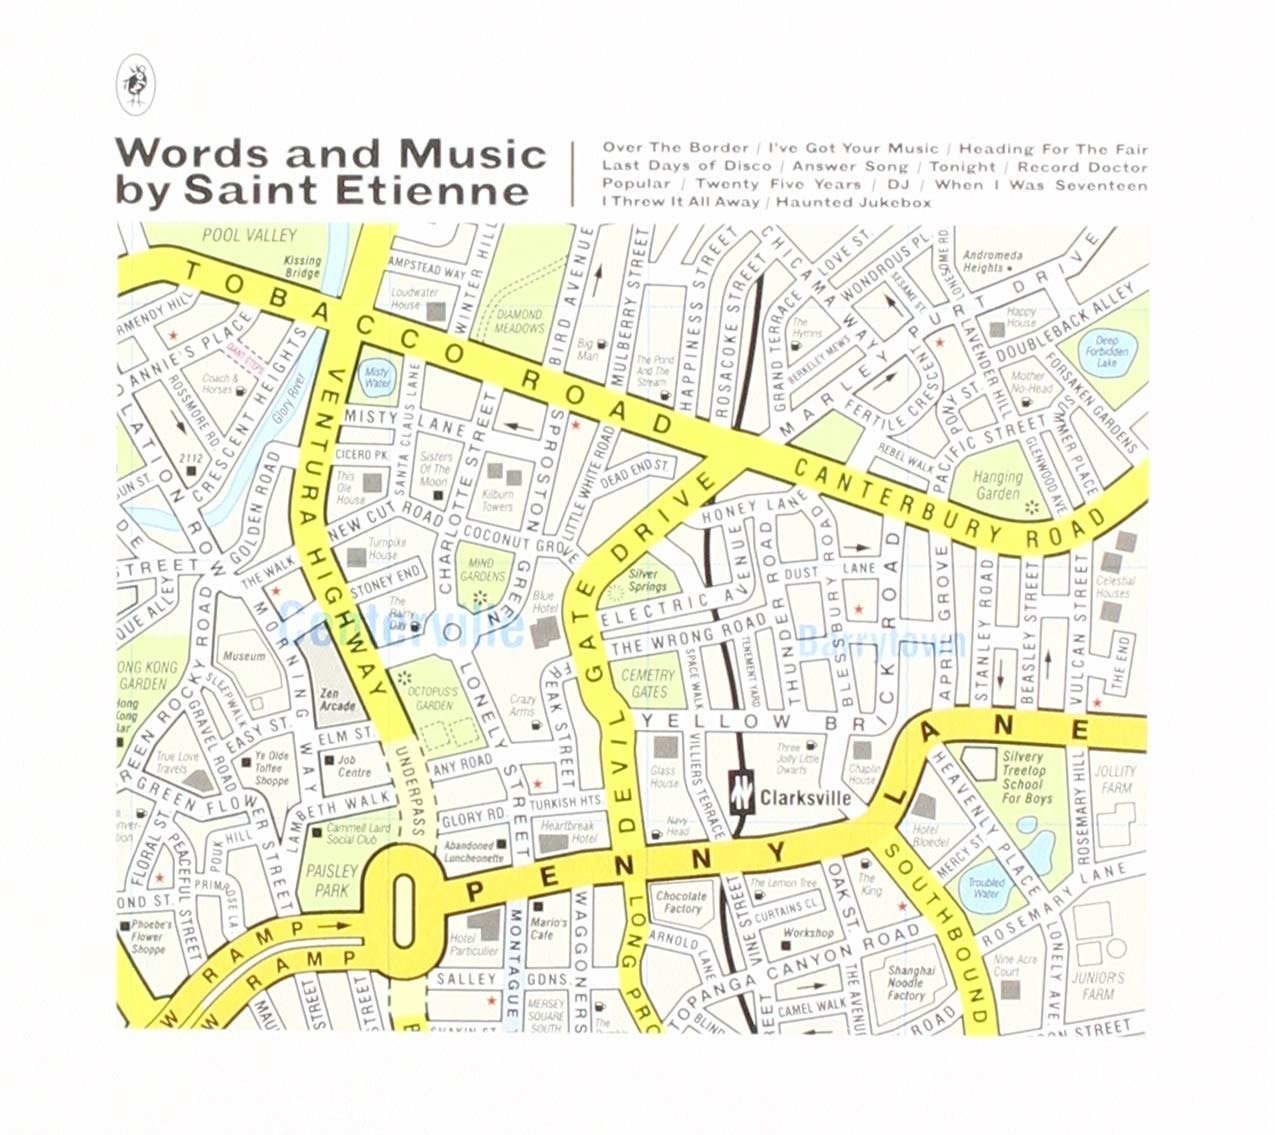 CD Shop - SAINT ETIENNE WORDS AND MUSIC BY SAINT ETIENNE